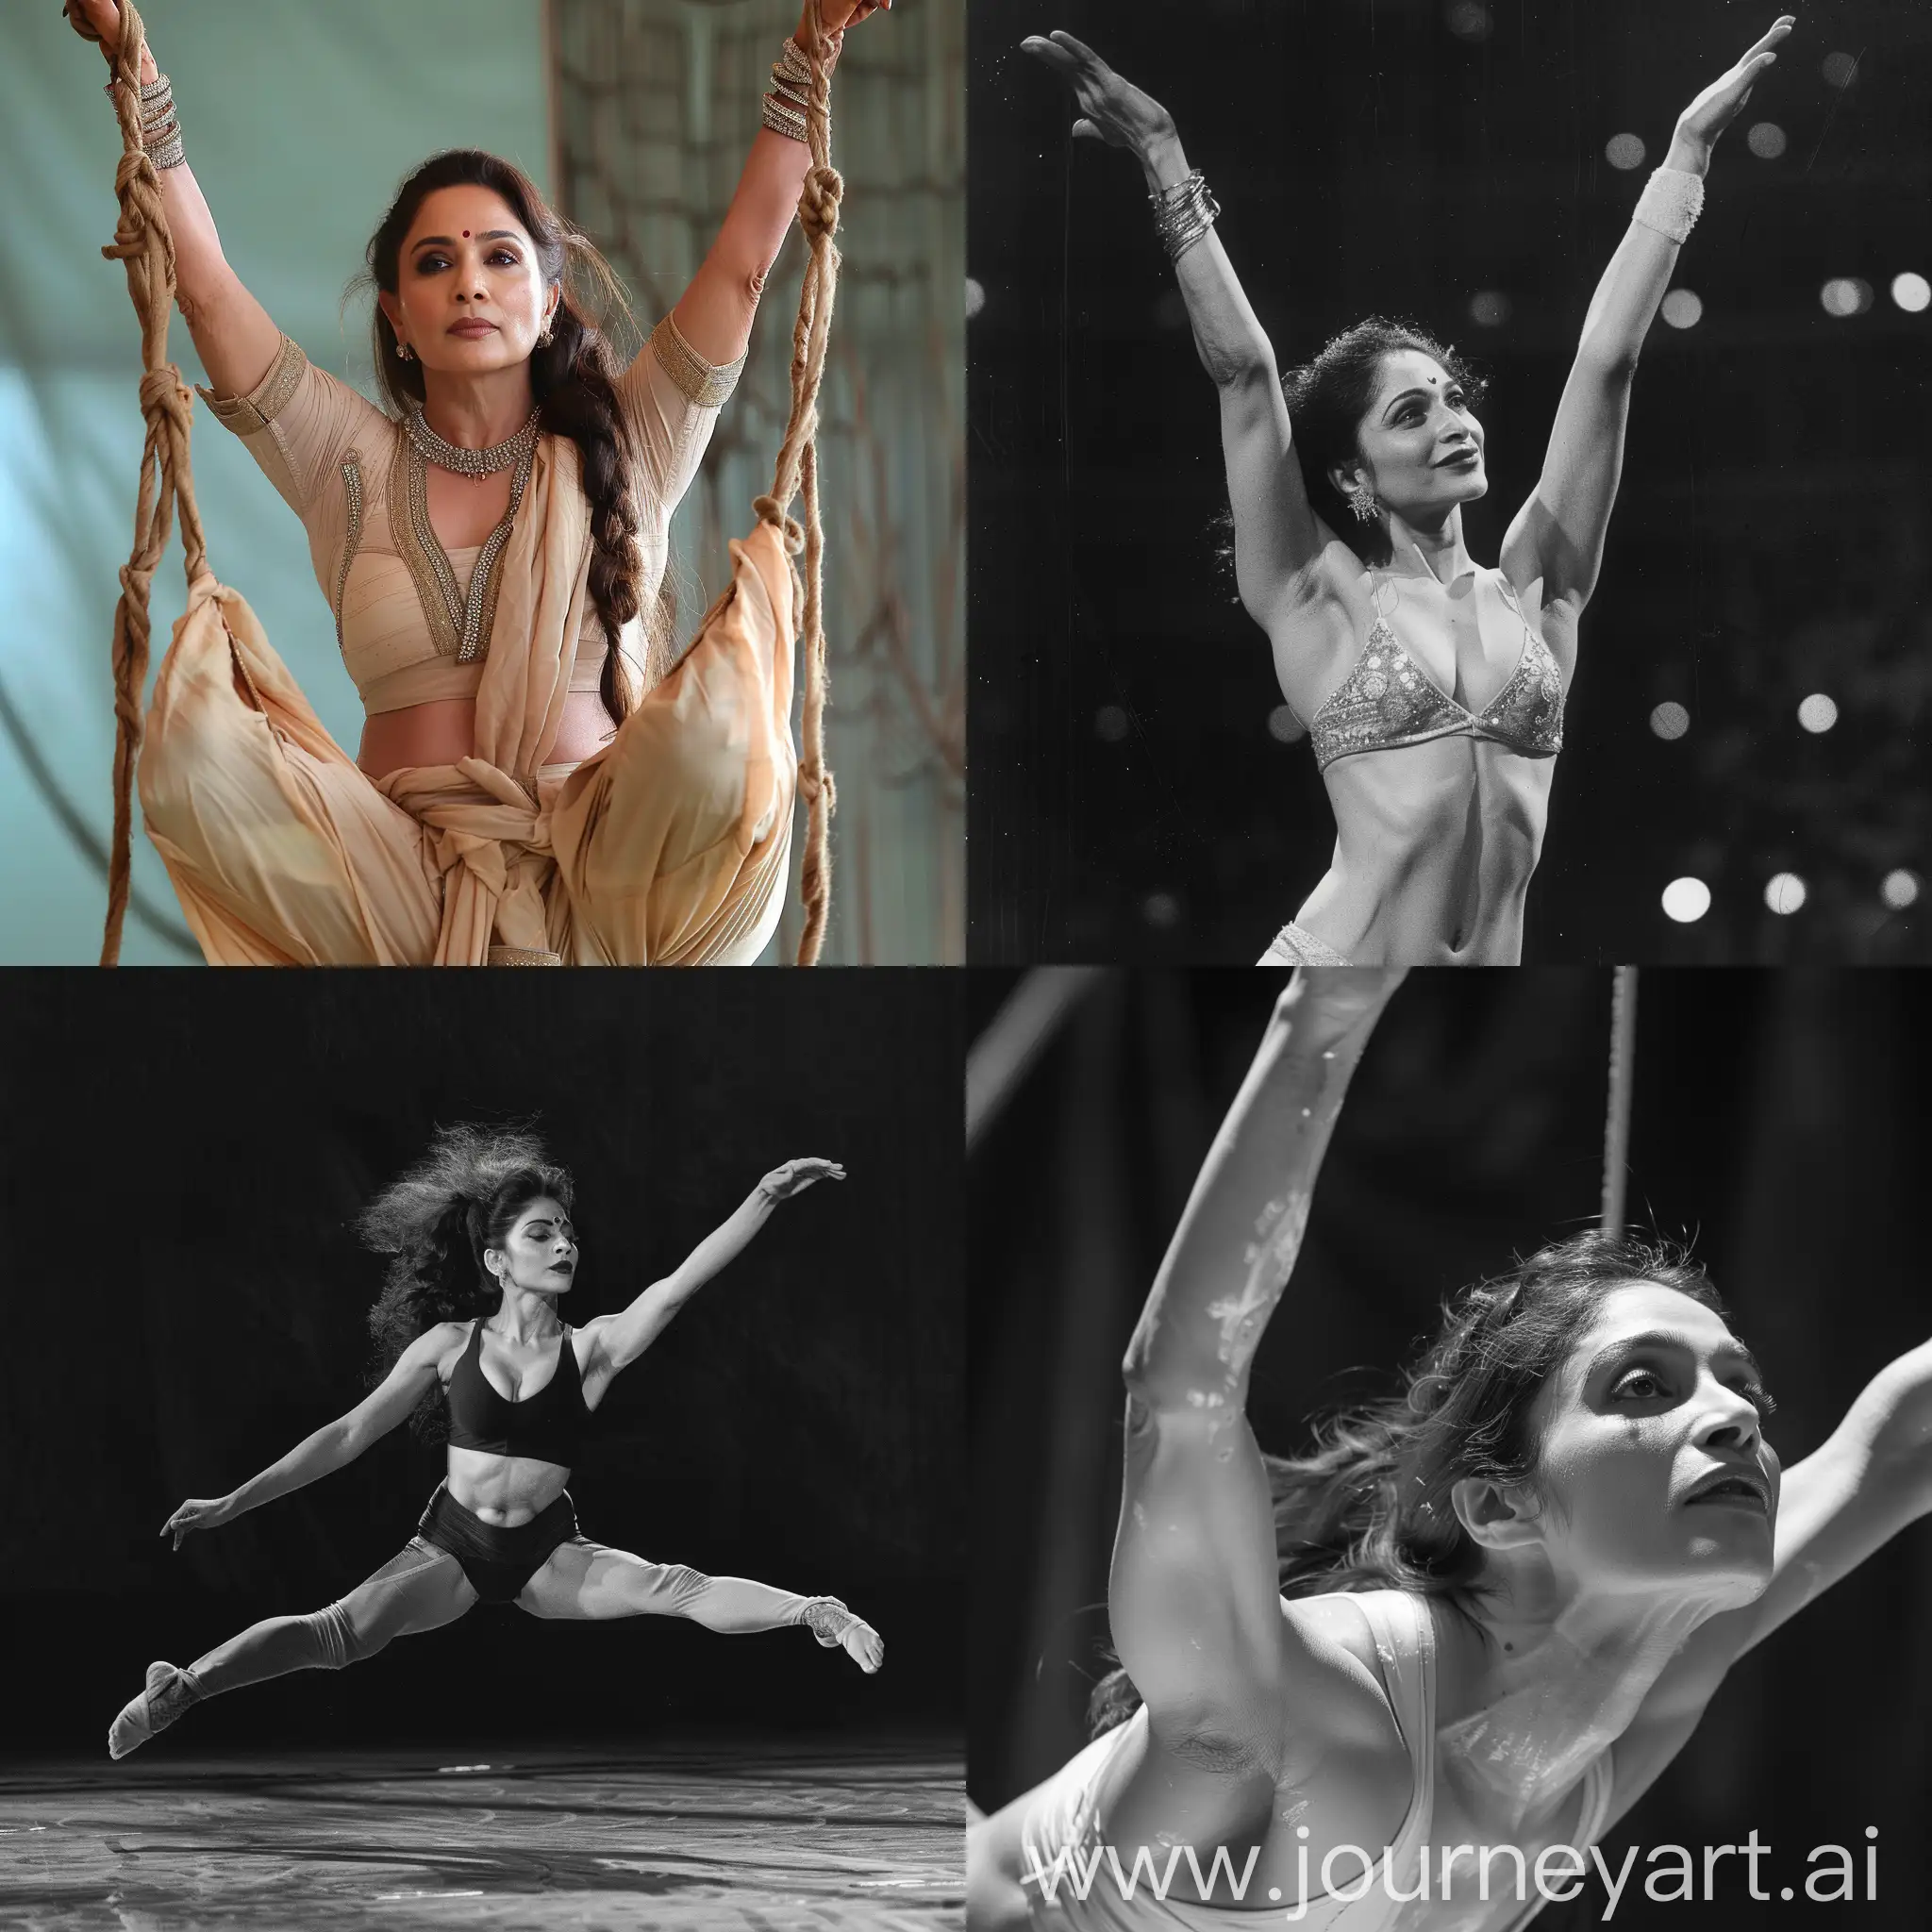 Madhuri-Dixit-Gracefully-Dominates-Gymnastics-in-Mesmerizing-Capture